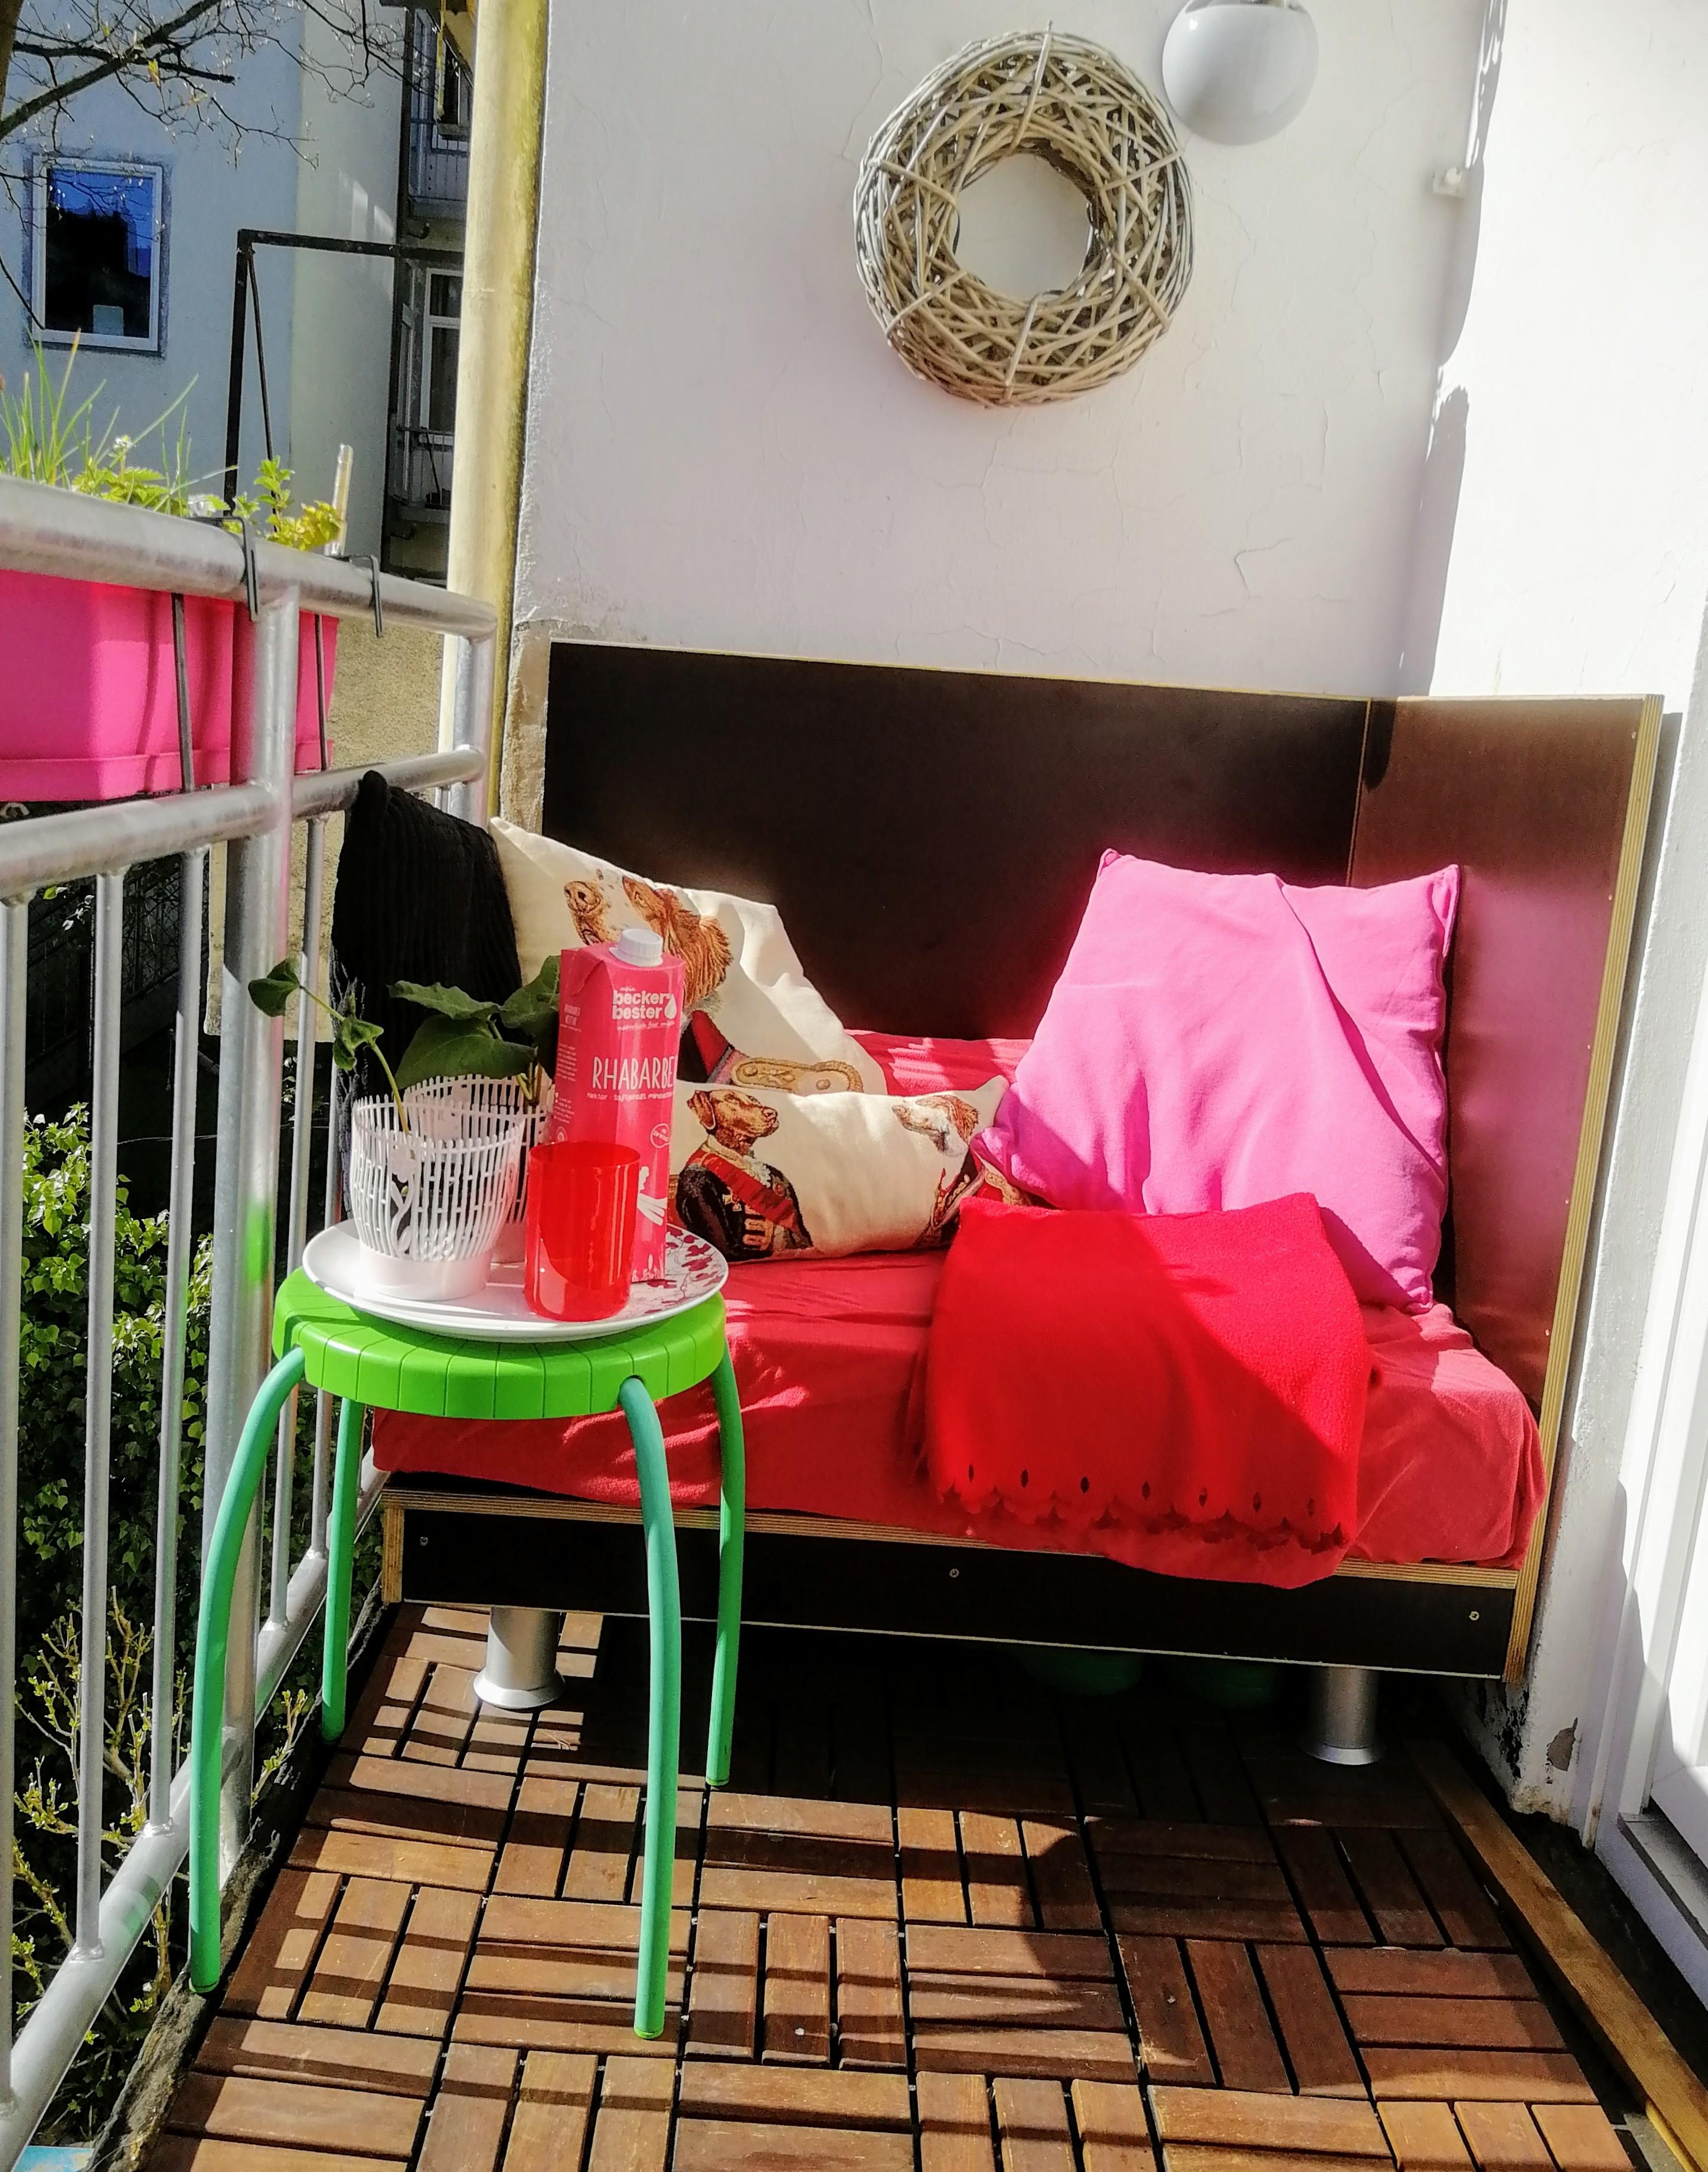 Eigens maßgefertigte Loungeecke aus Siebdruckplatte & alter Matratze... #balkondiy #balkon #diy #colourful #balkonmöbel